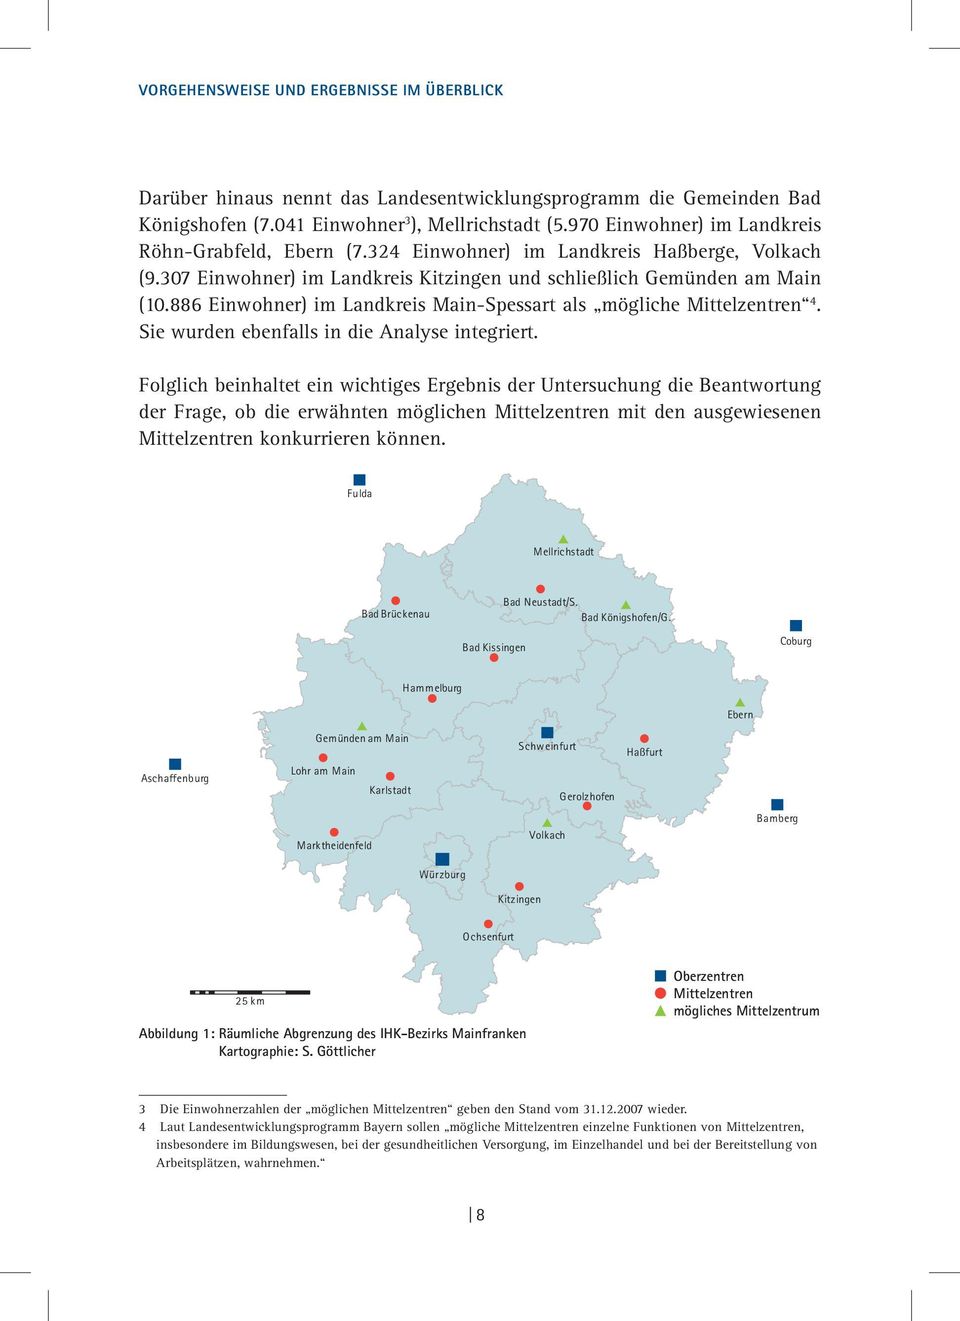 886 Einwohner) im Landkreis Main-Spessart als mögliche Mittelzentren 4. Sie wurden ebenfalls in die Analyse integriert.